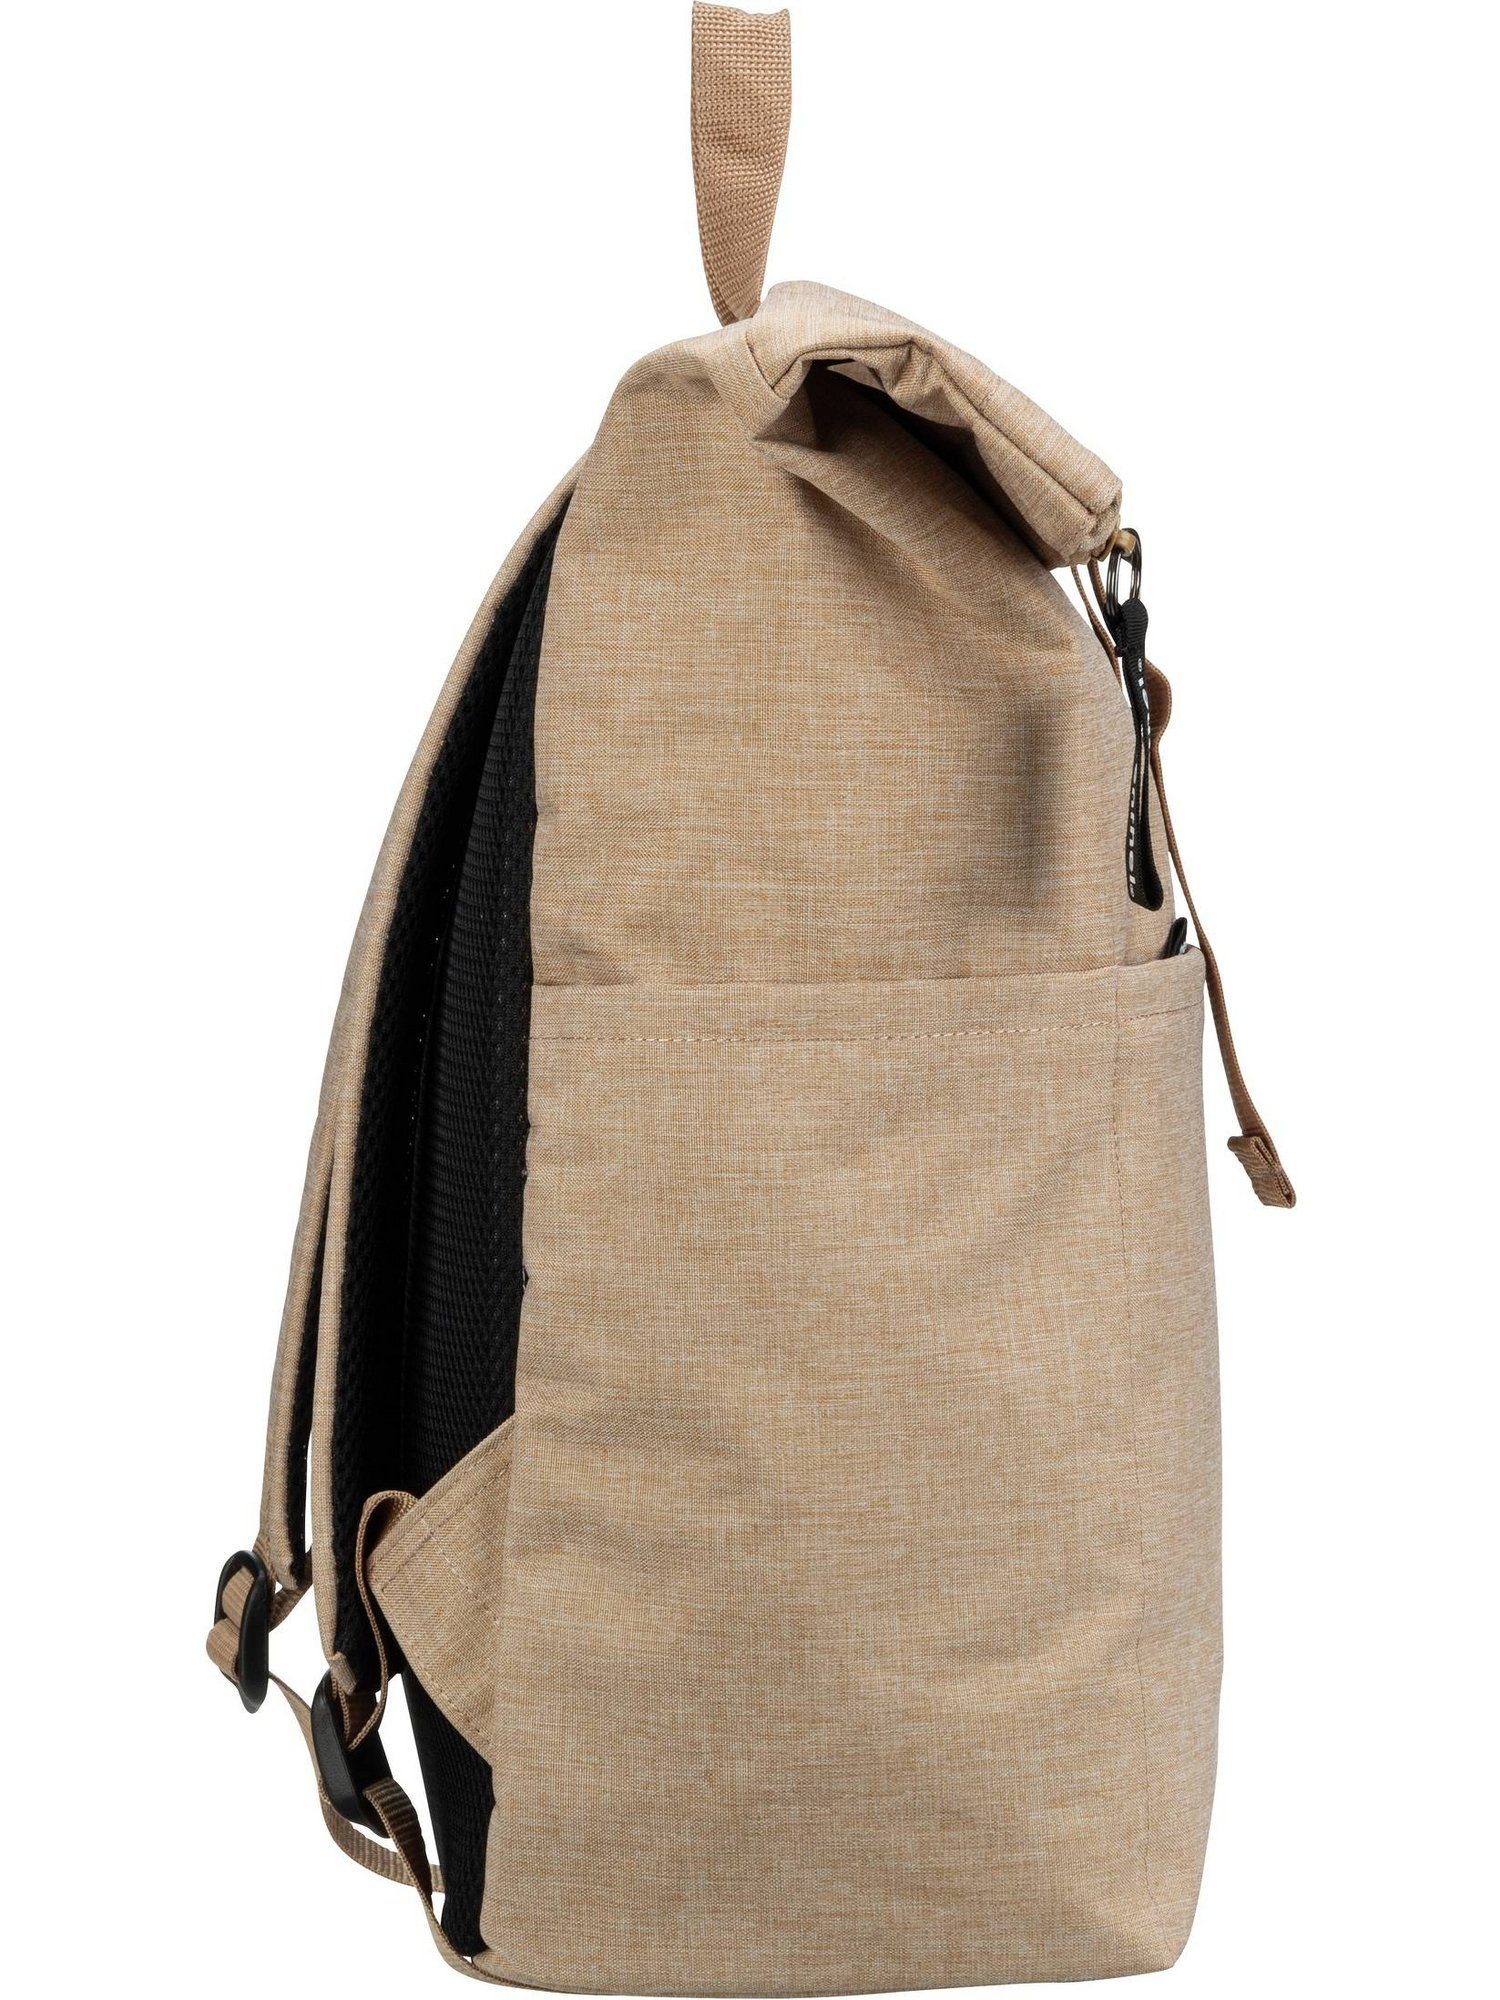 Twist REISENTHEL® Packsack Coffee backpack rolltop